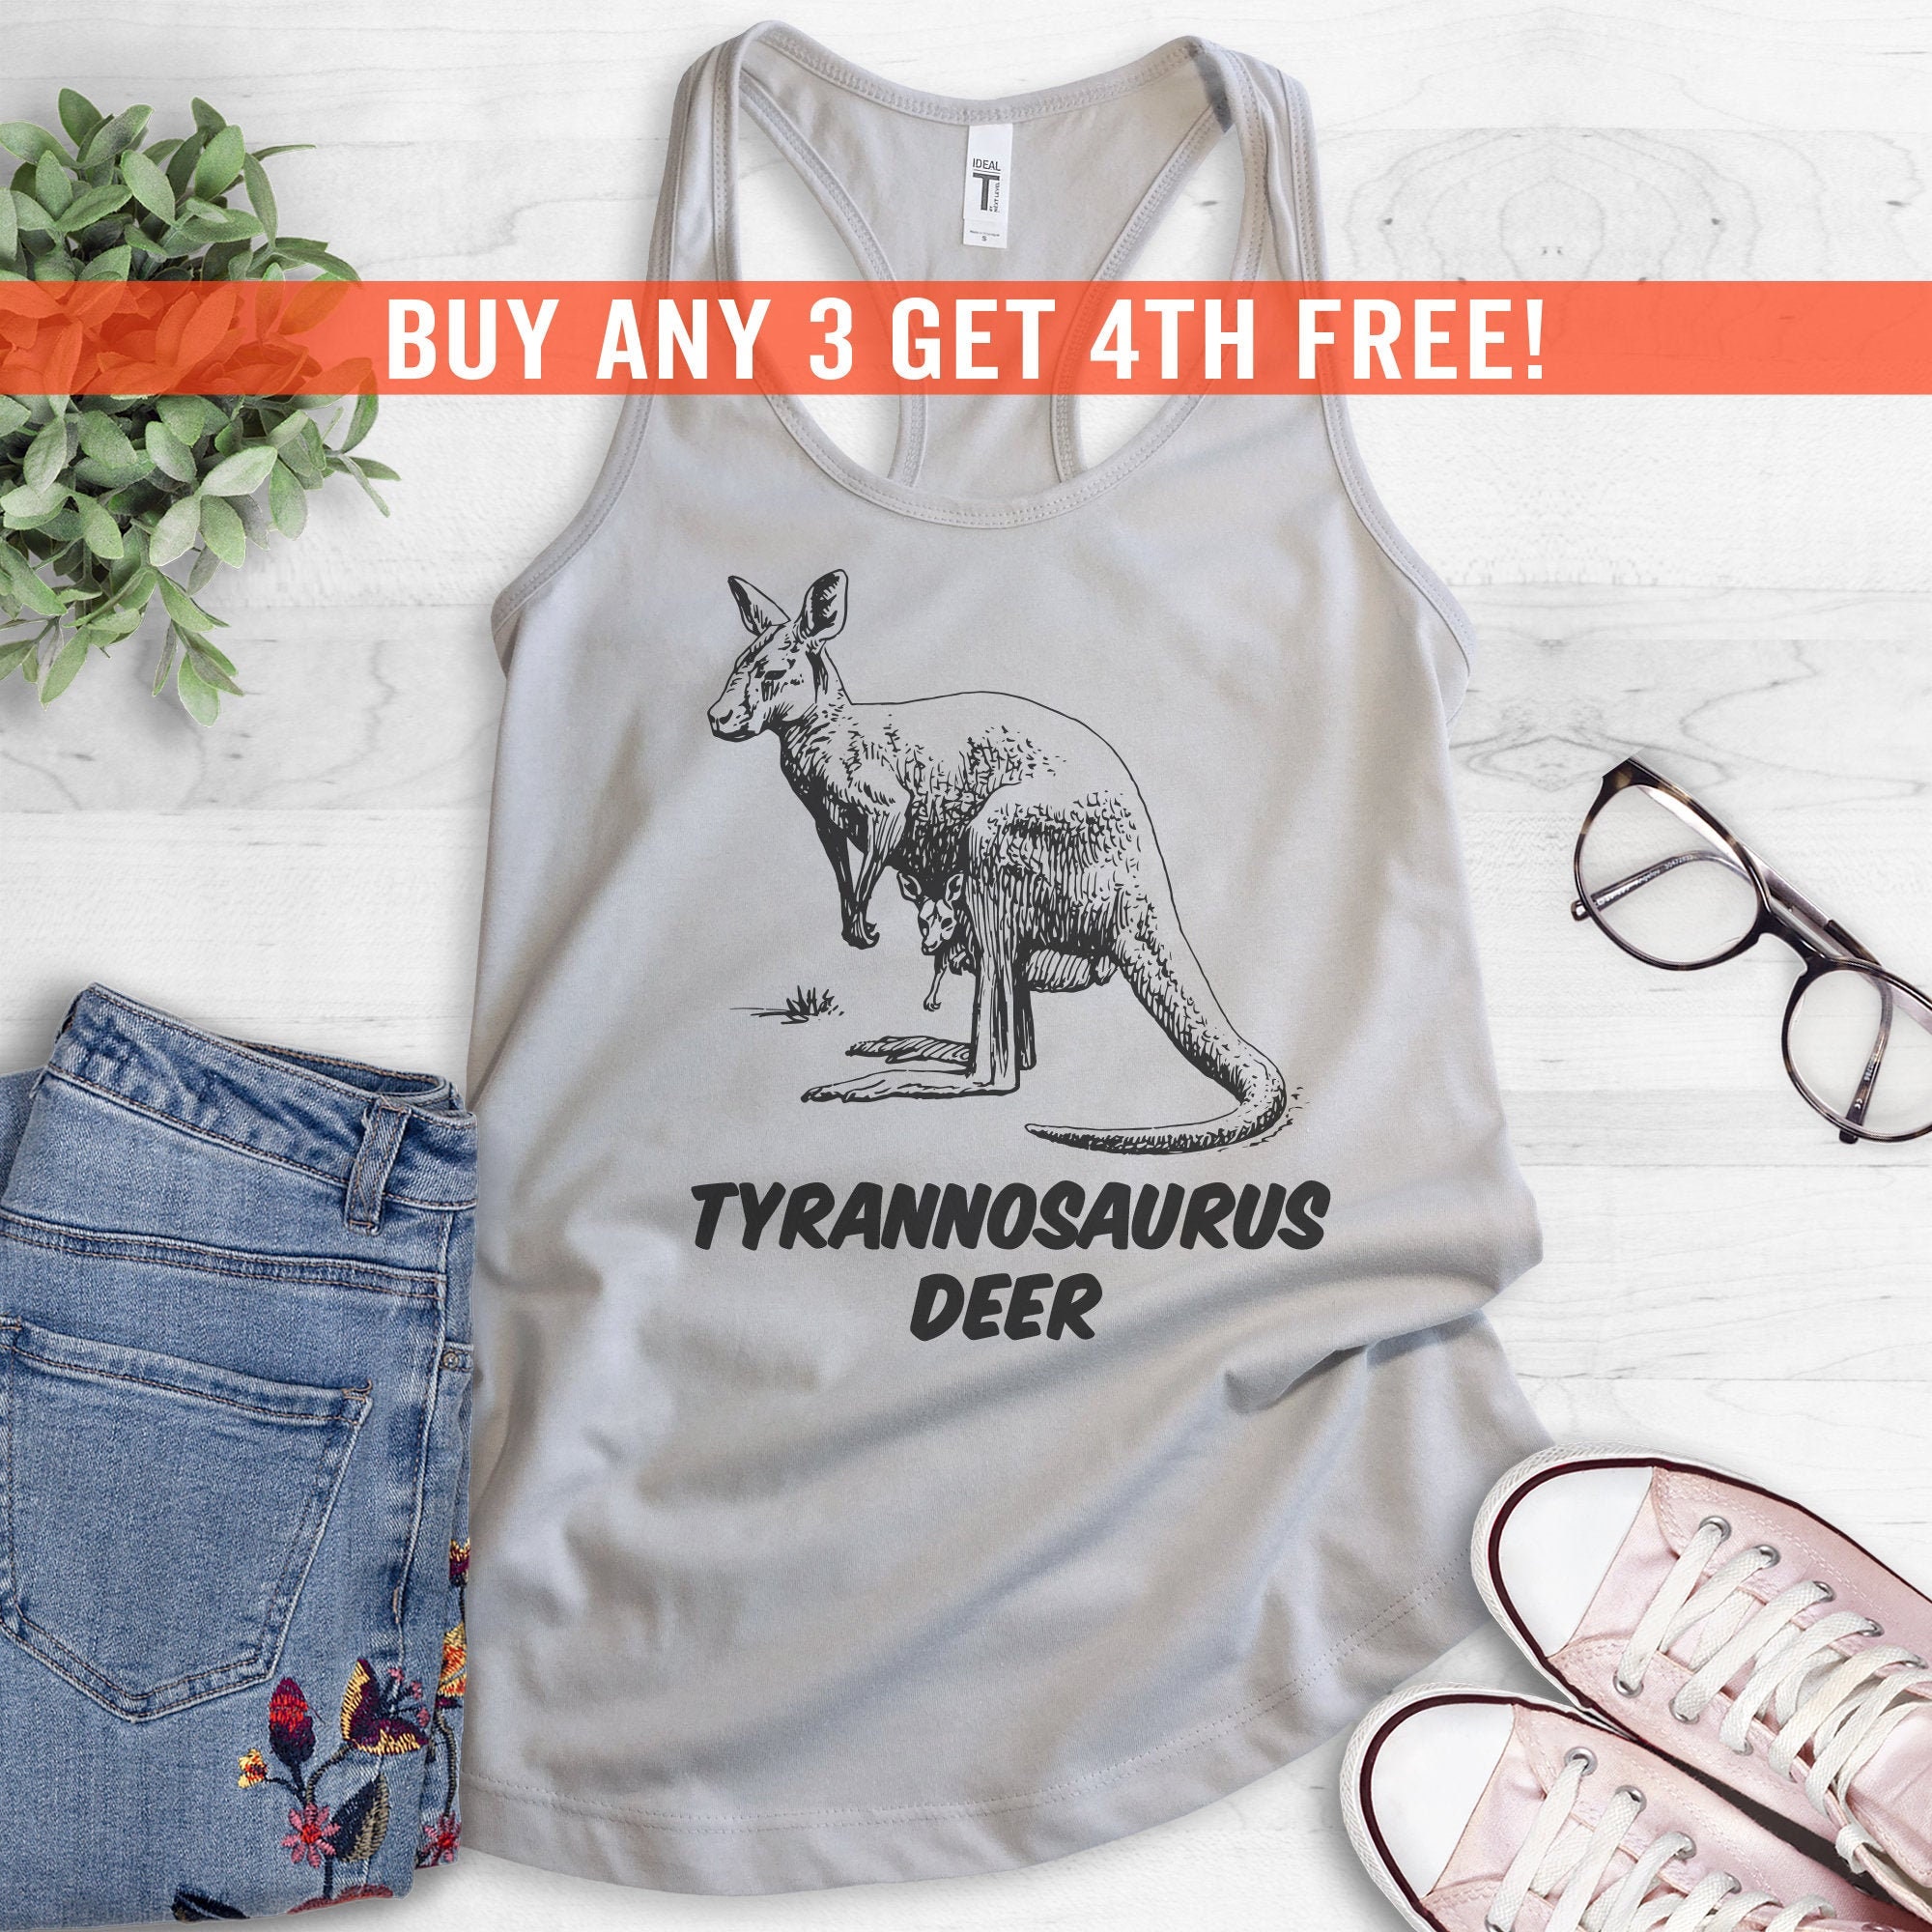 Tyrannosaurus Deer Tank Top, Ladies Racerback, Kangaroo Tank Top, Cute Kangaroo  Shirt, Animal Pun Tank Top, Animal Lover Shirt - Etsy